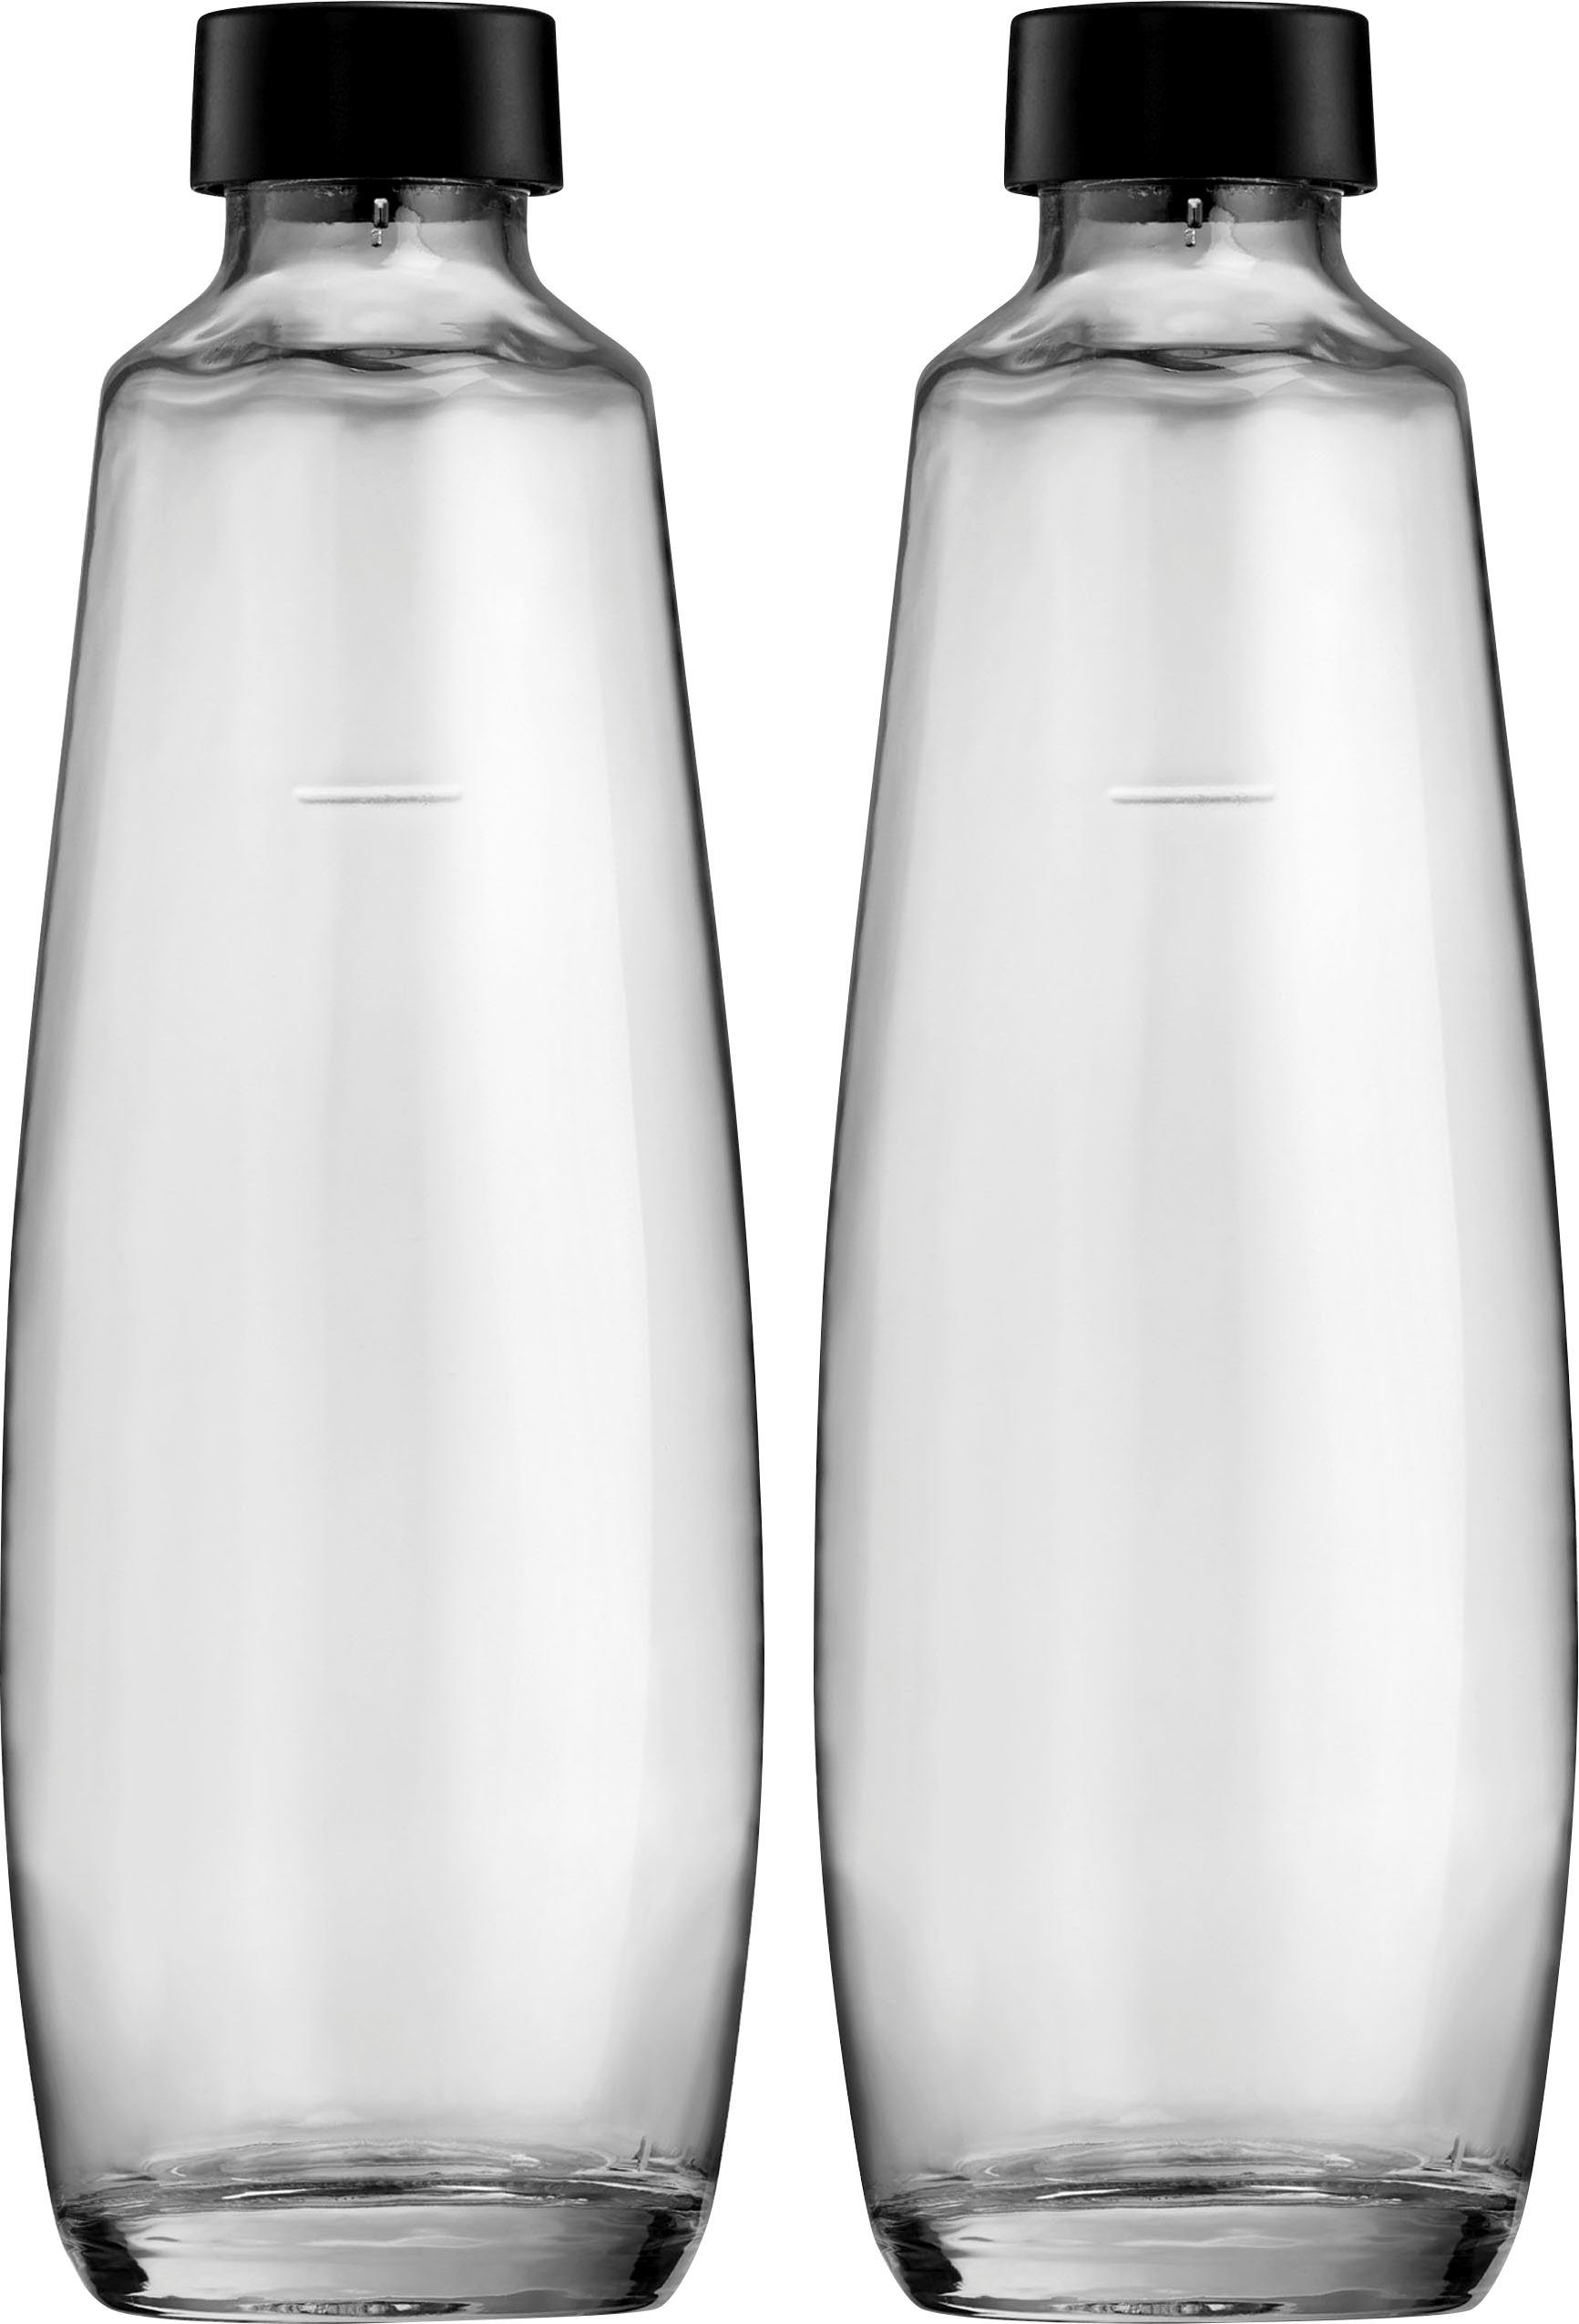 1L DUO, Flasche Wassersprudler Ersatzflaschen 2x (Set, SodaStream Glasflache, DuoPack, SodaStream 2-tlg), Für 1L